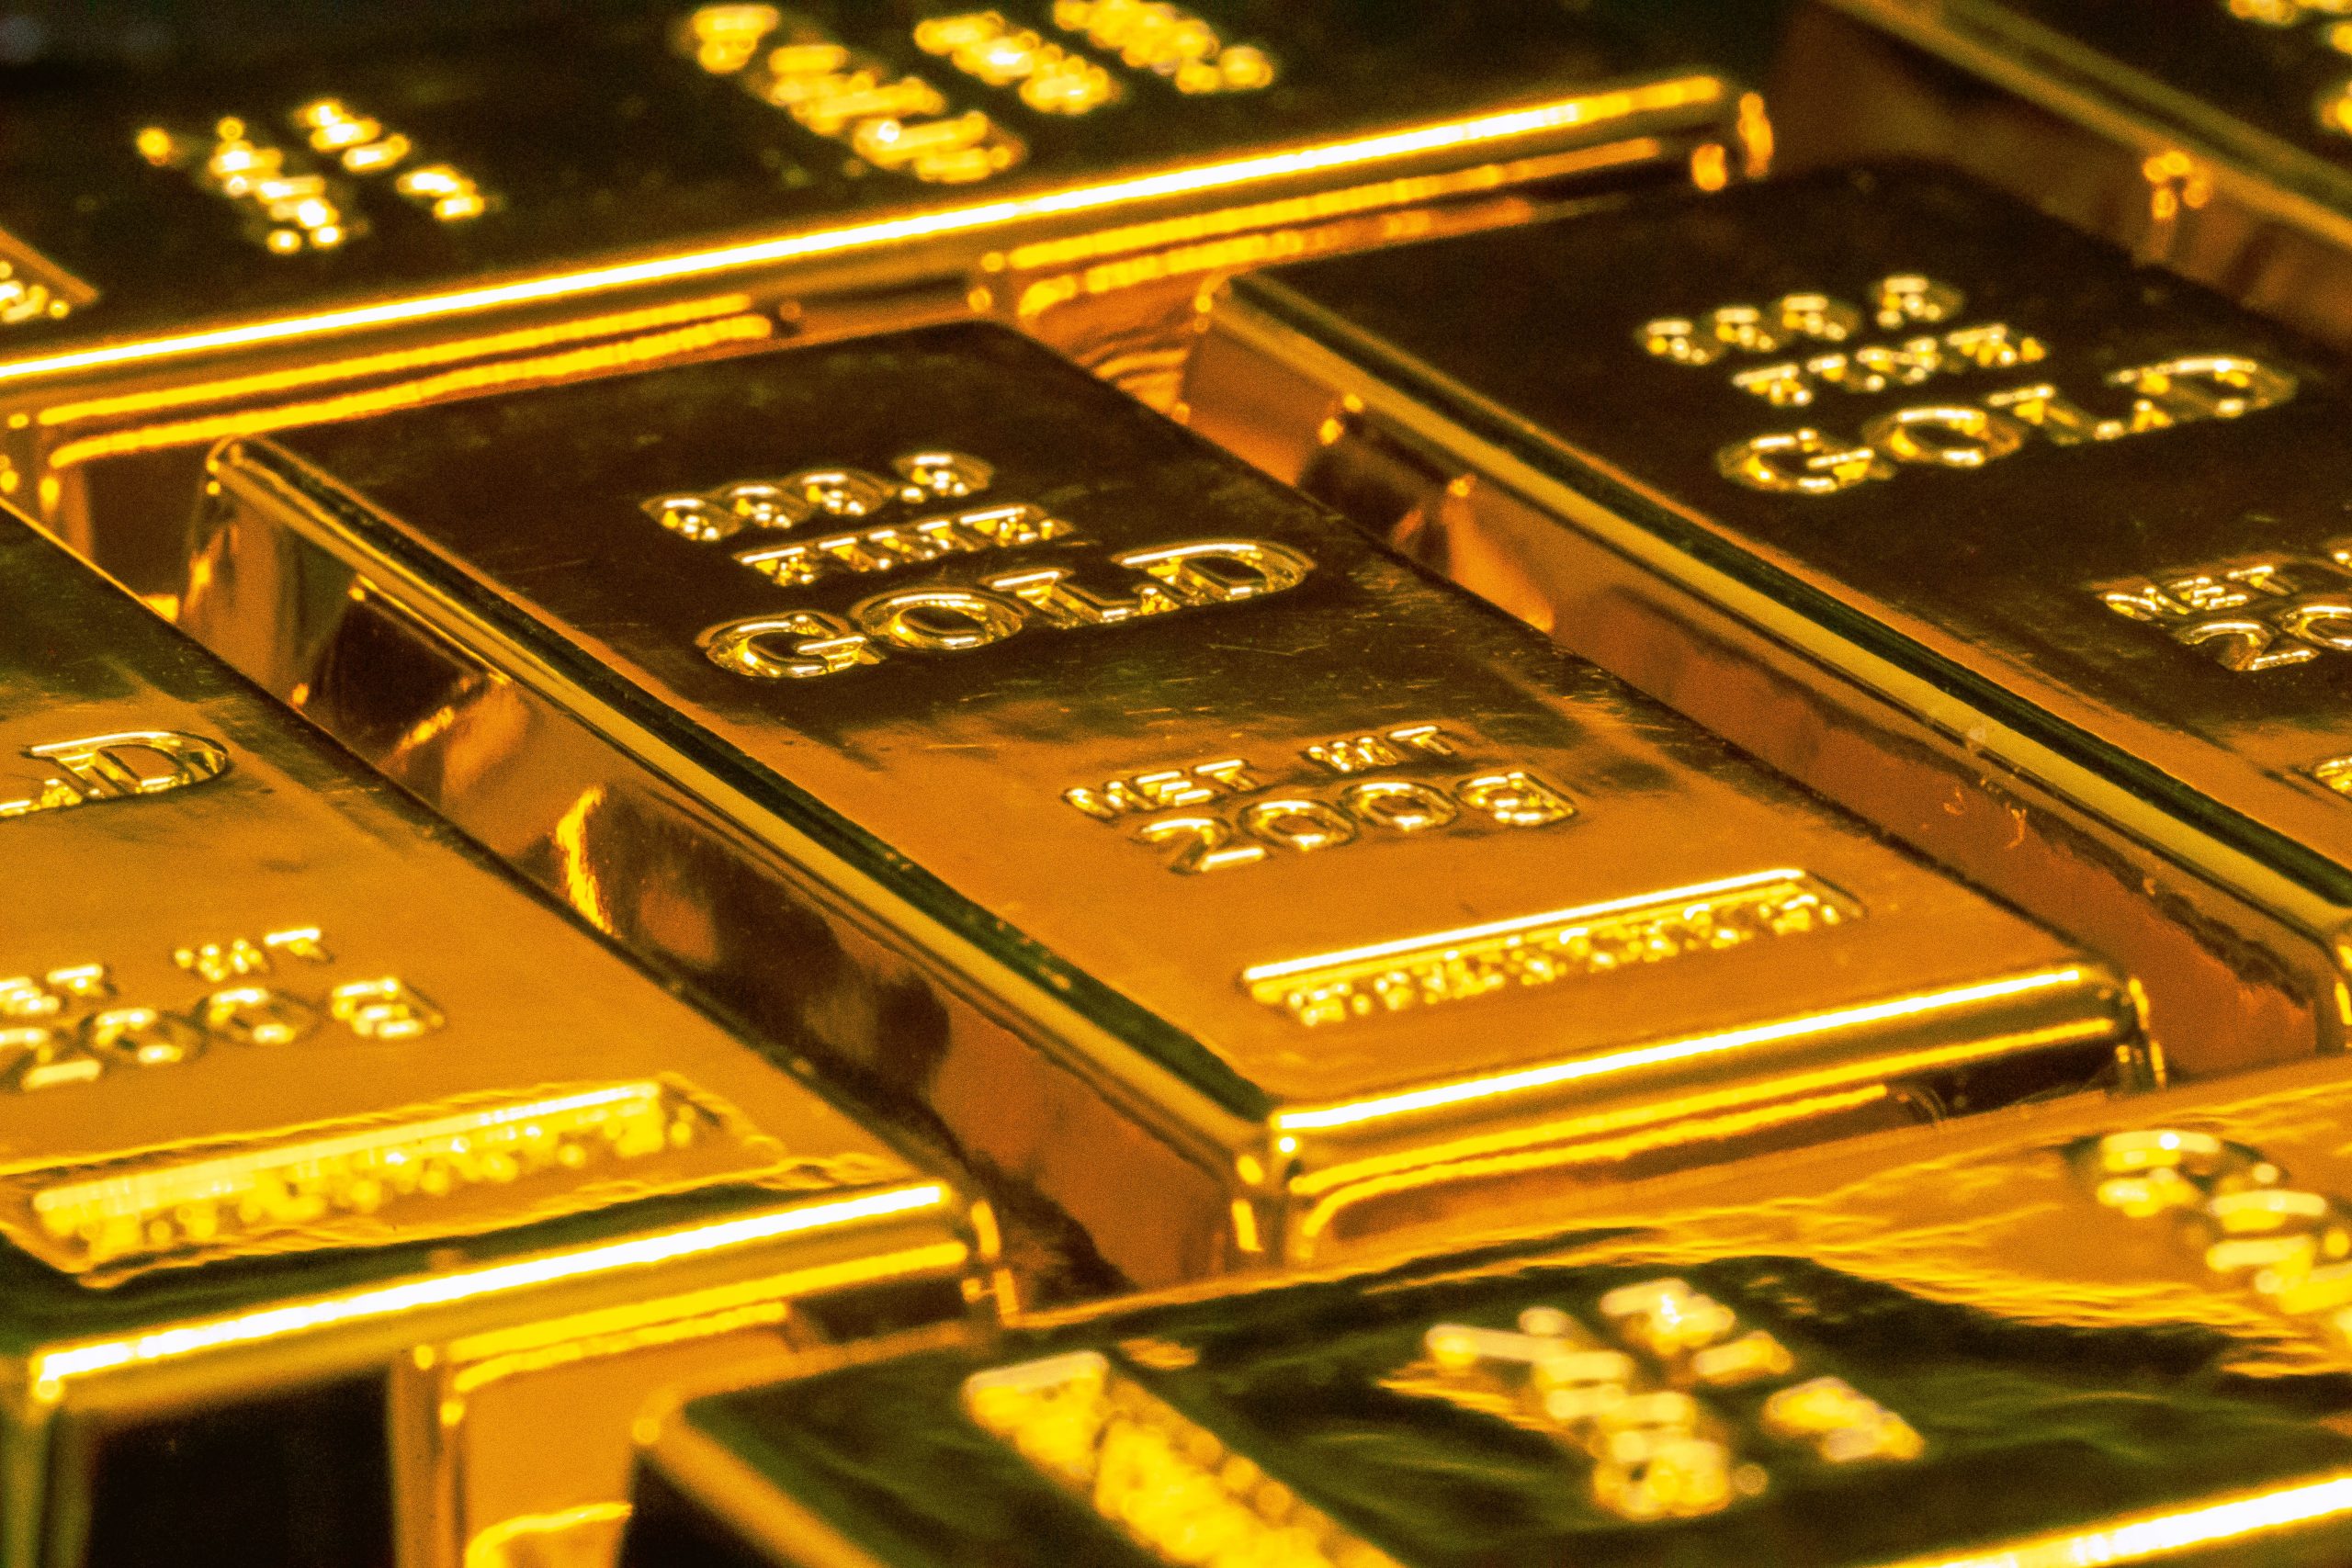 Bank sentral Rusia sebut akan berhenti beli emas dengan harga tetap